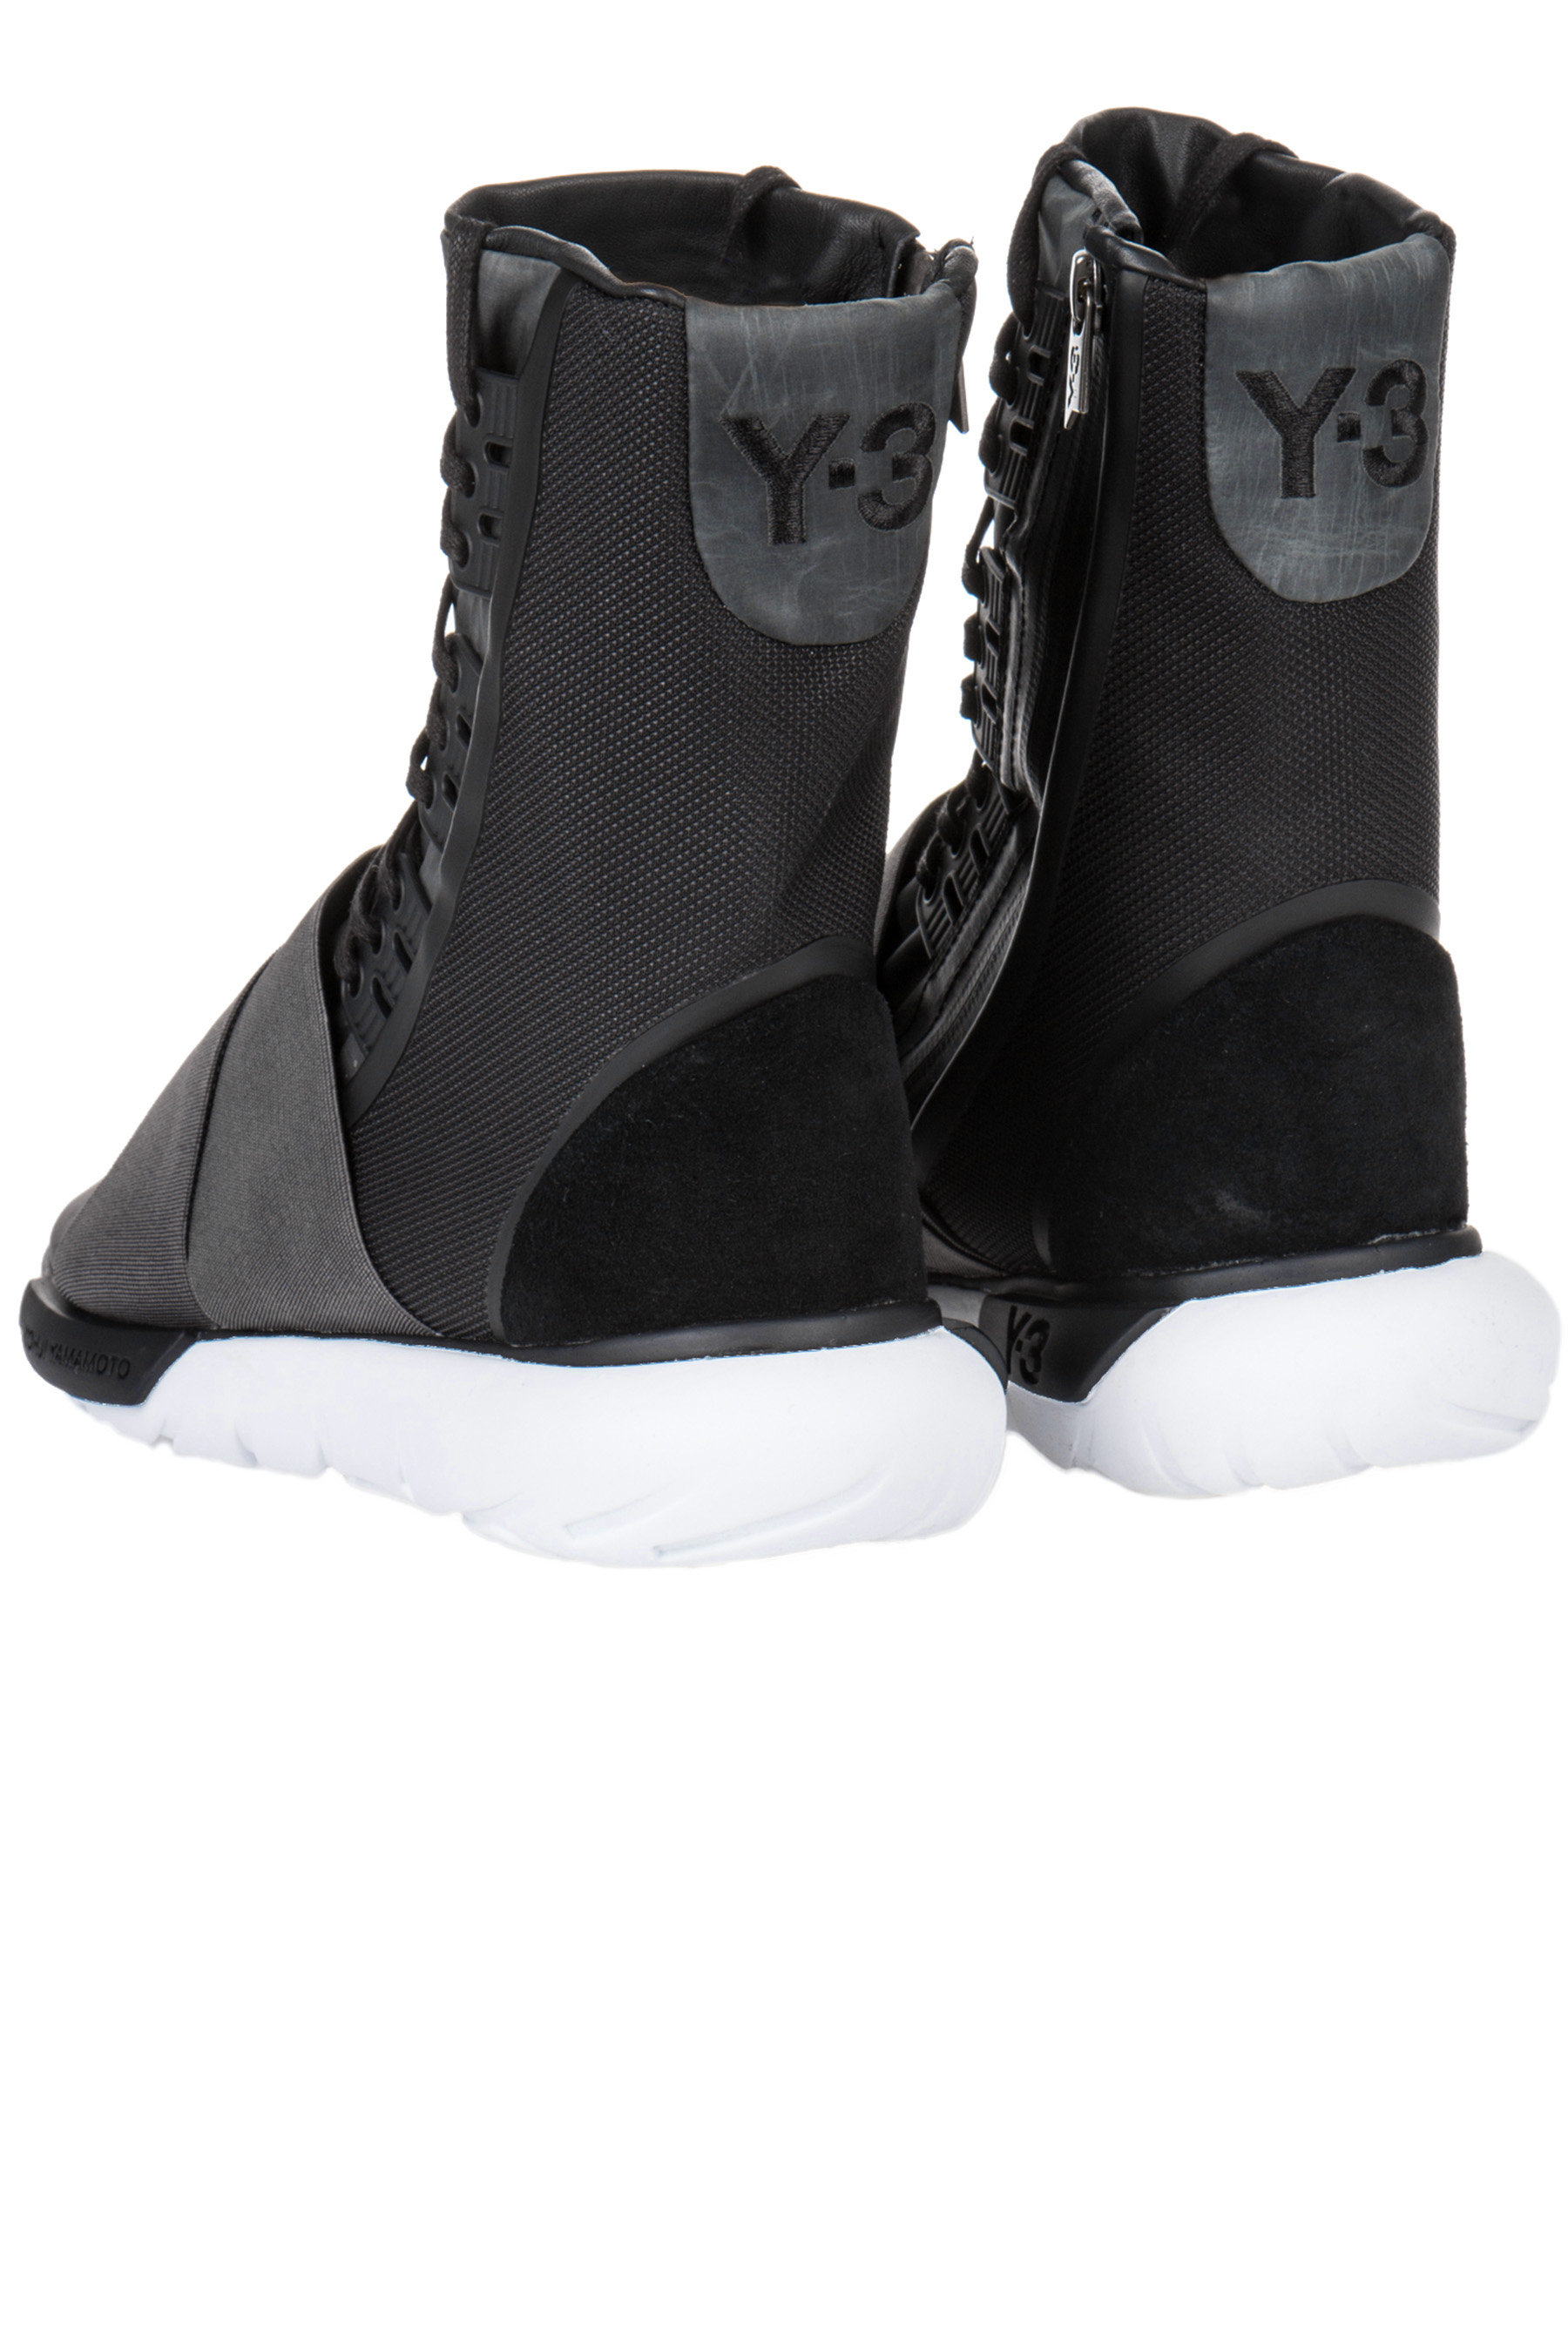 Y-3 Qasa Boots | Sneakers | Shoes | Men 